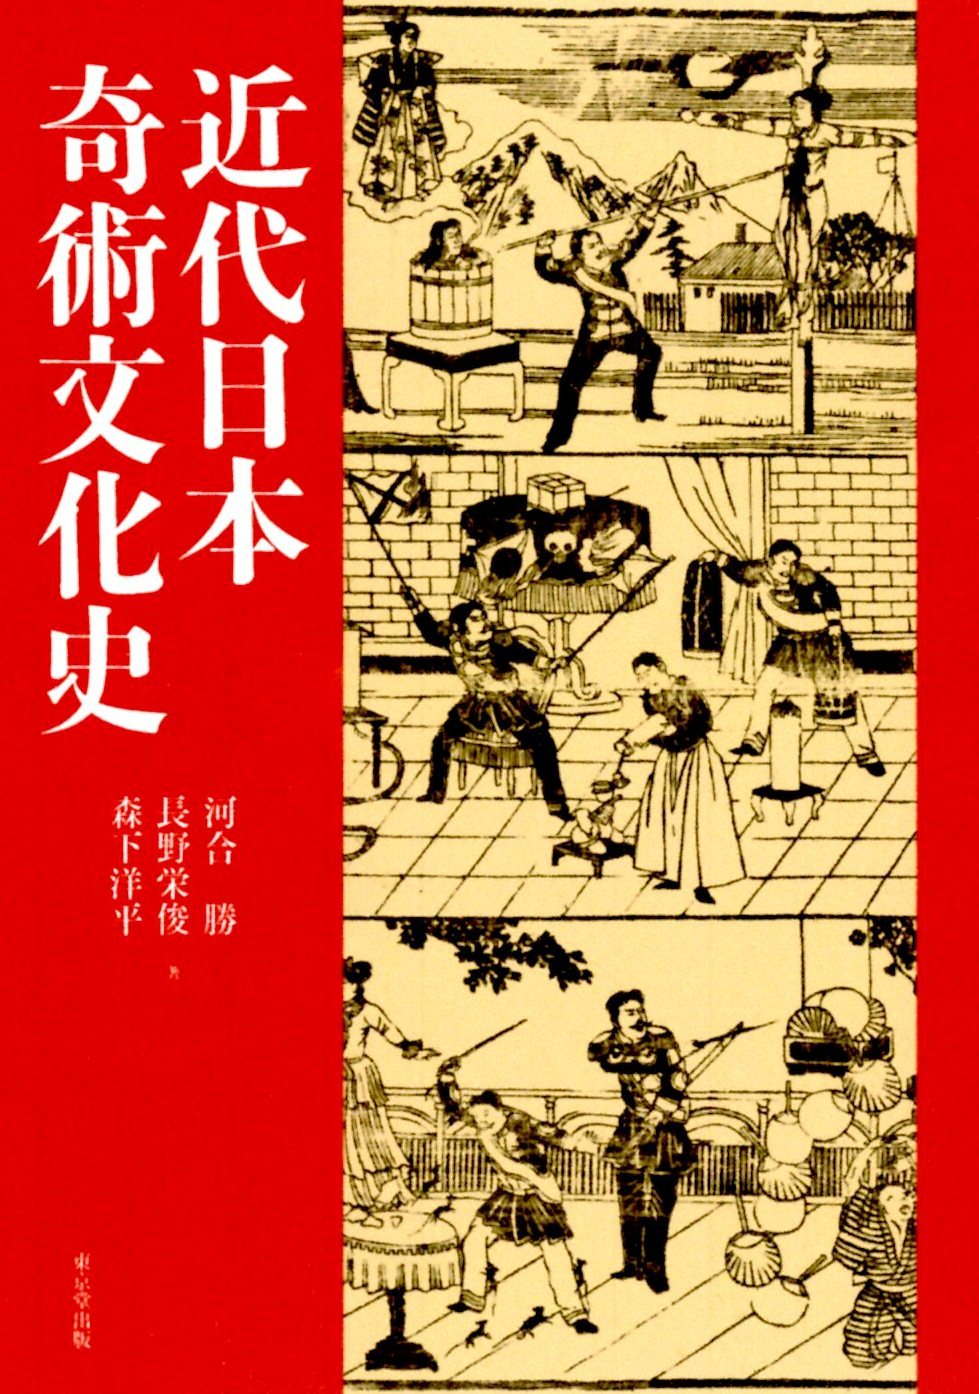 「近代日本奇術文化史」_c0336375_13553293.jpg